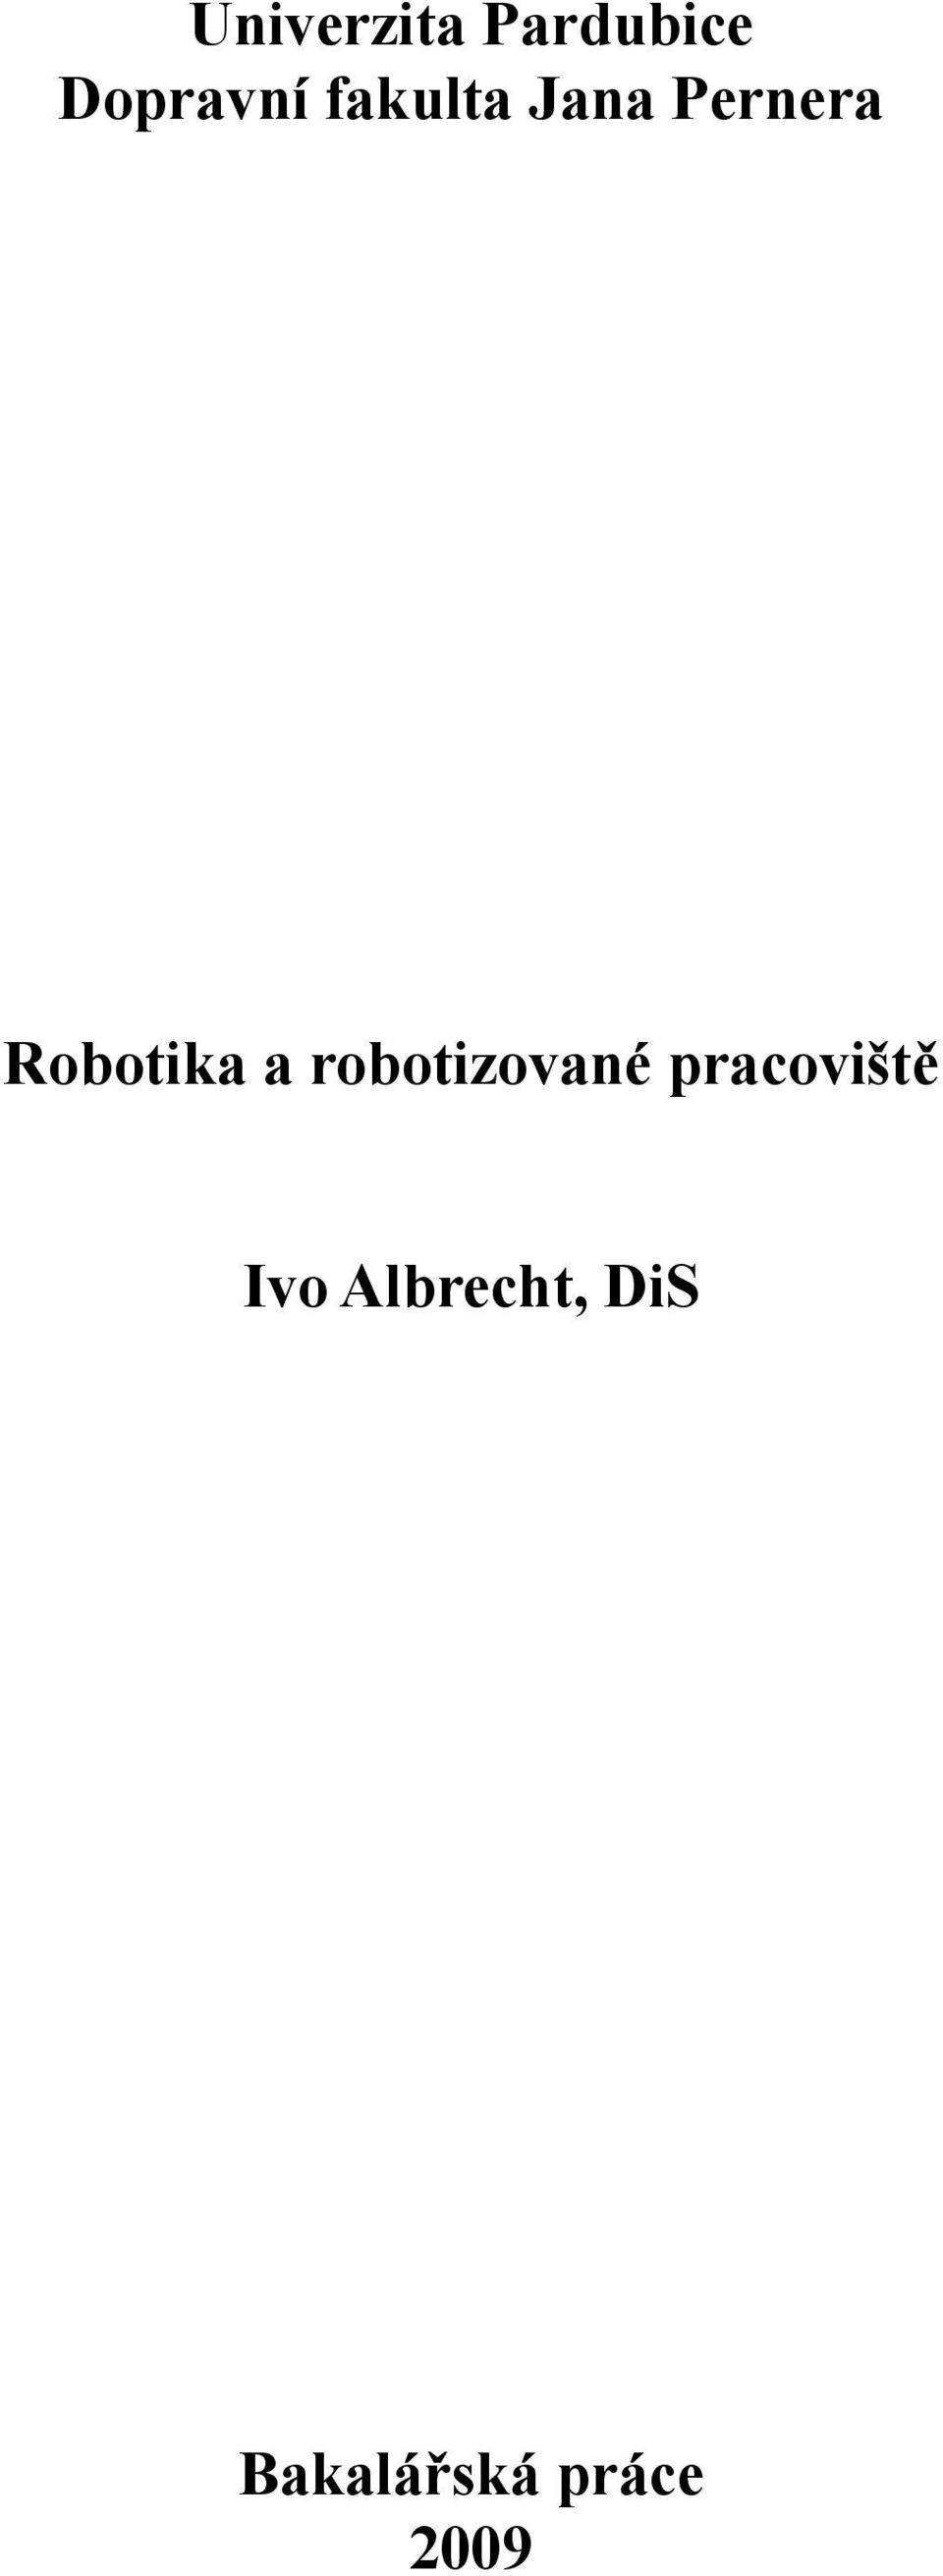 Pernera Robotika a